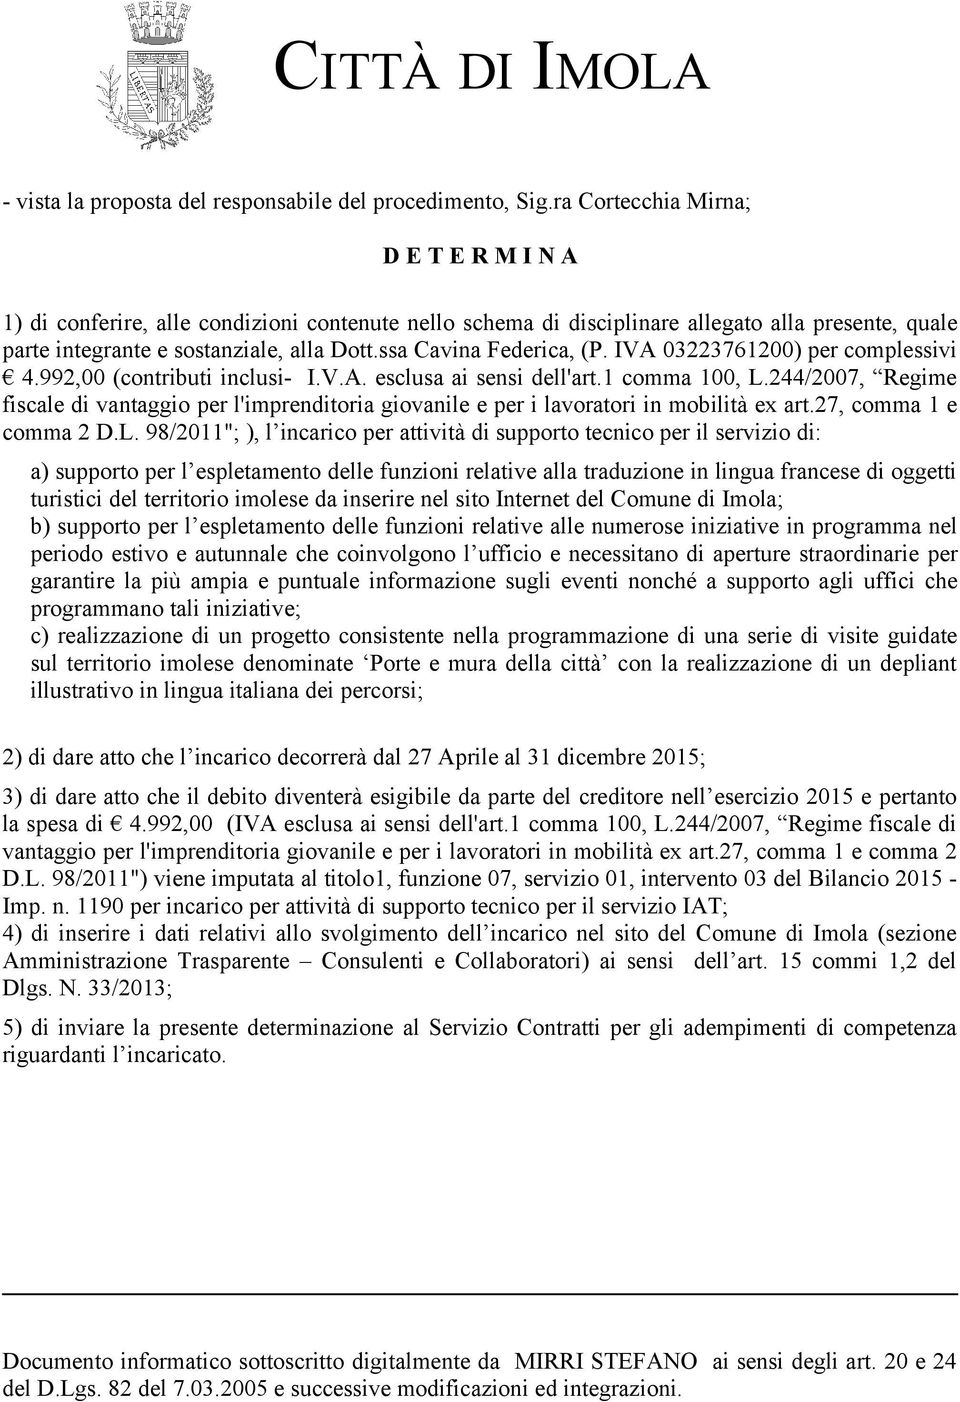 ssa Cavina Federica, (P. IVA 03223761200) per complessivi 4.992,00 (contributi inclusi- I.V.A. esclusa ai sensi dell'art.1 comma 100, L.